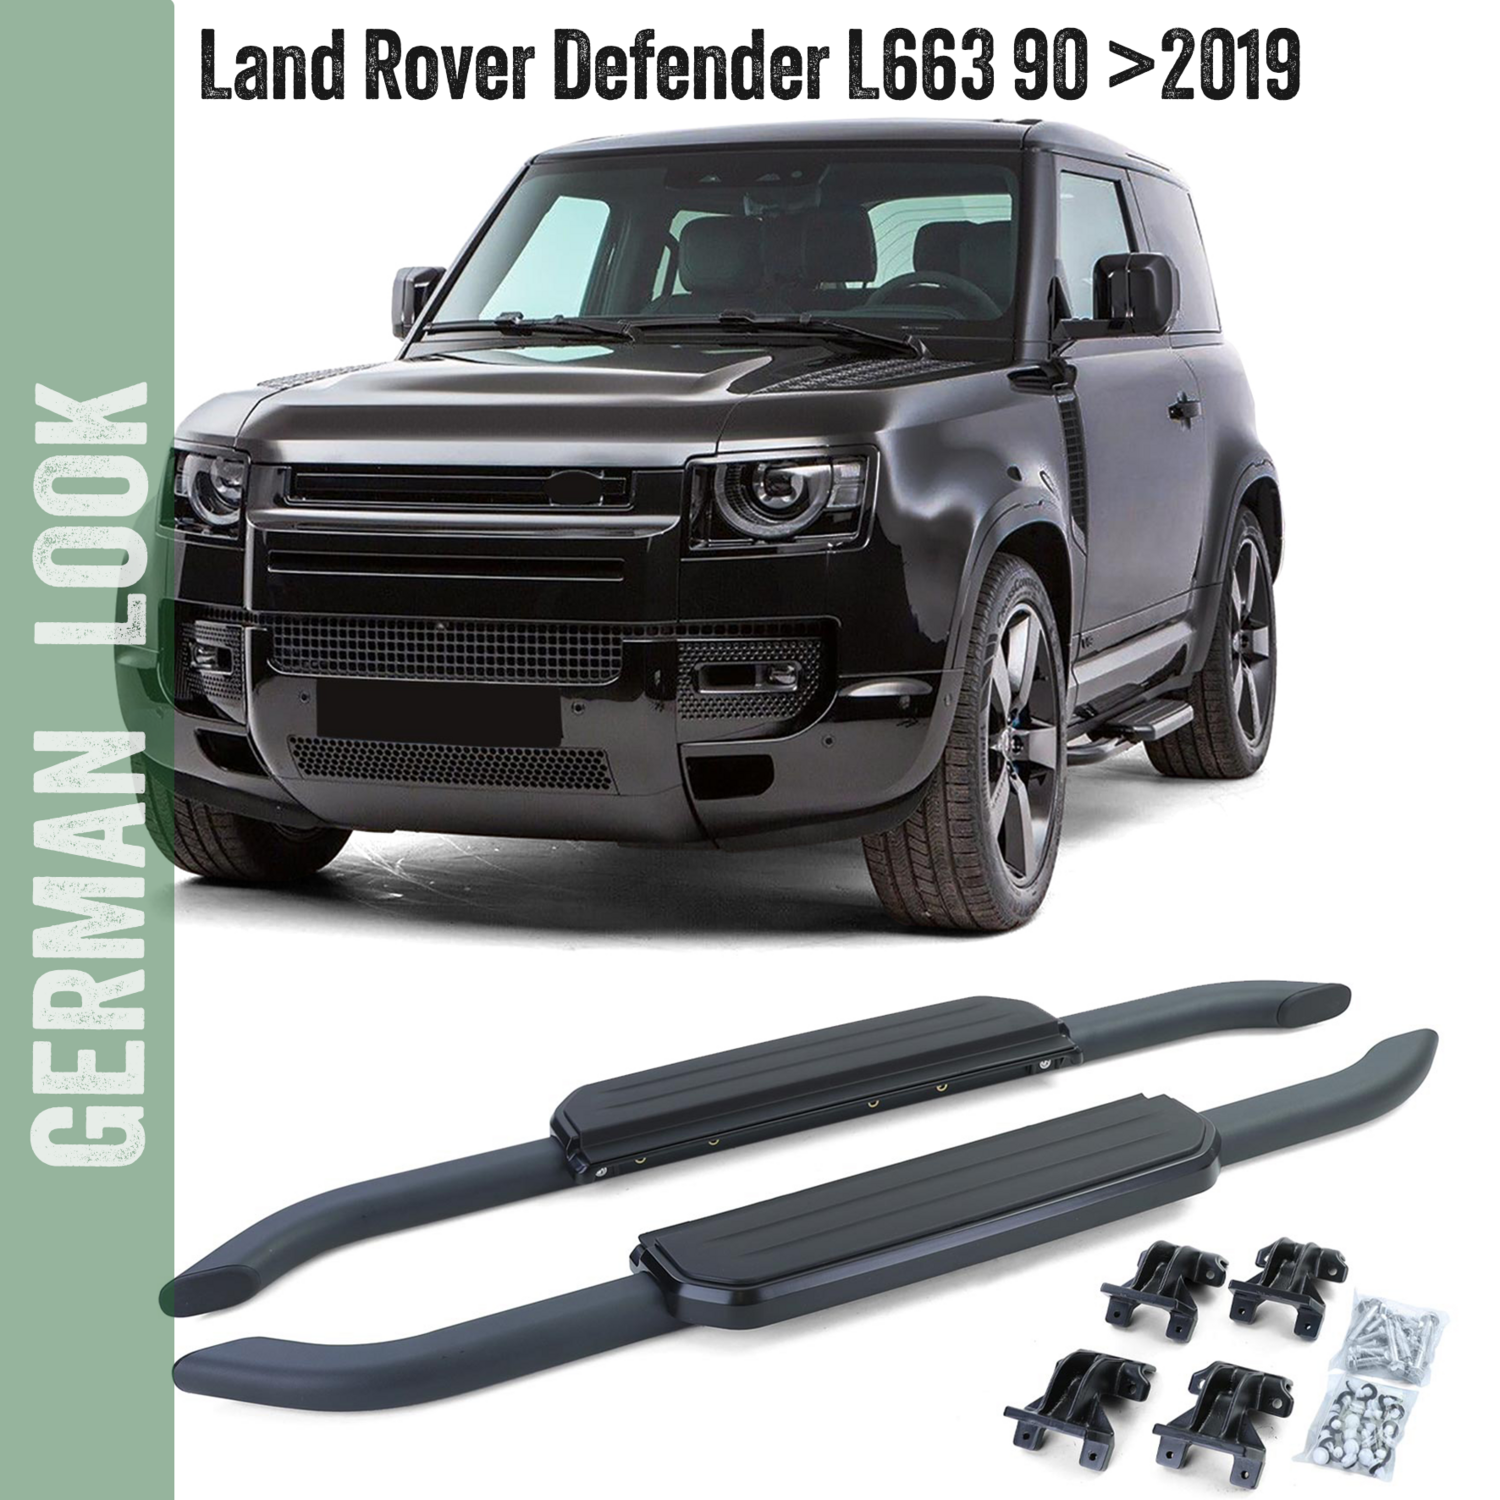 Marchepieds en aluminium noir pour Land Rover Defender L663 90 après 2019